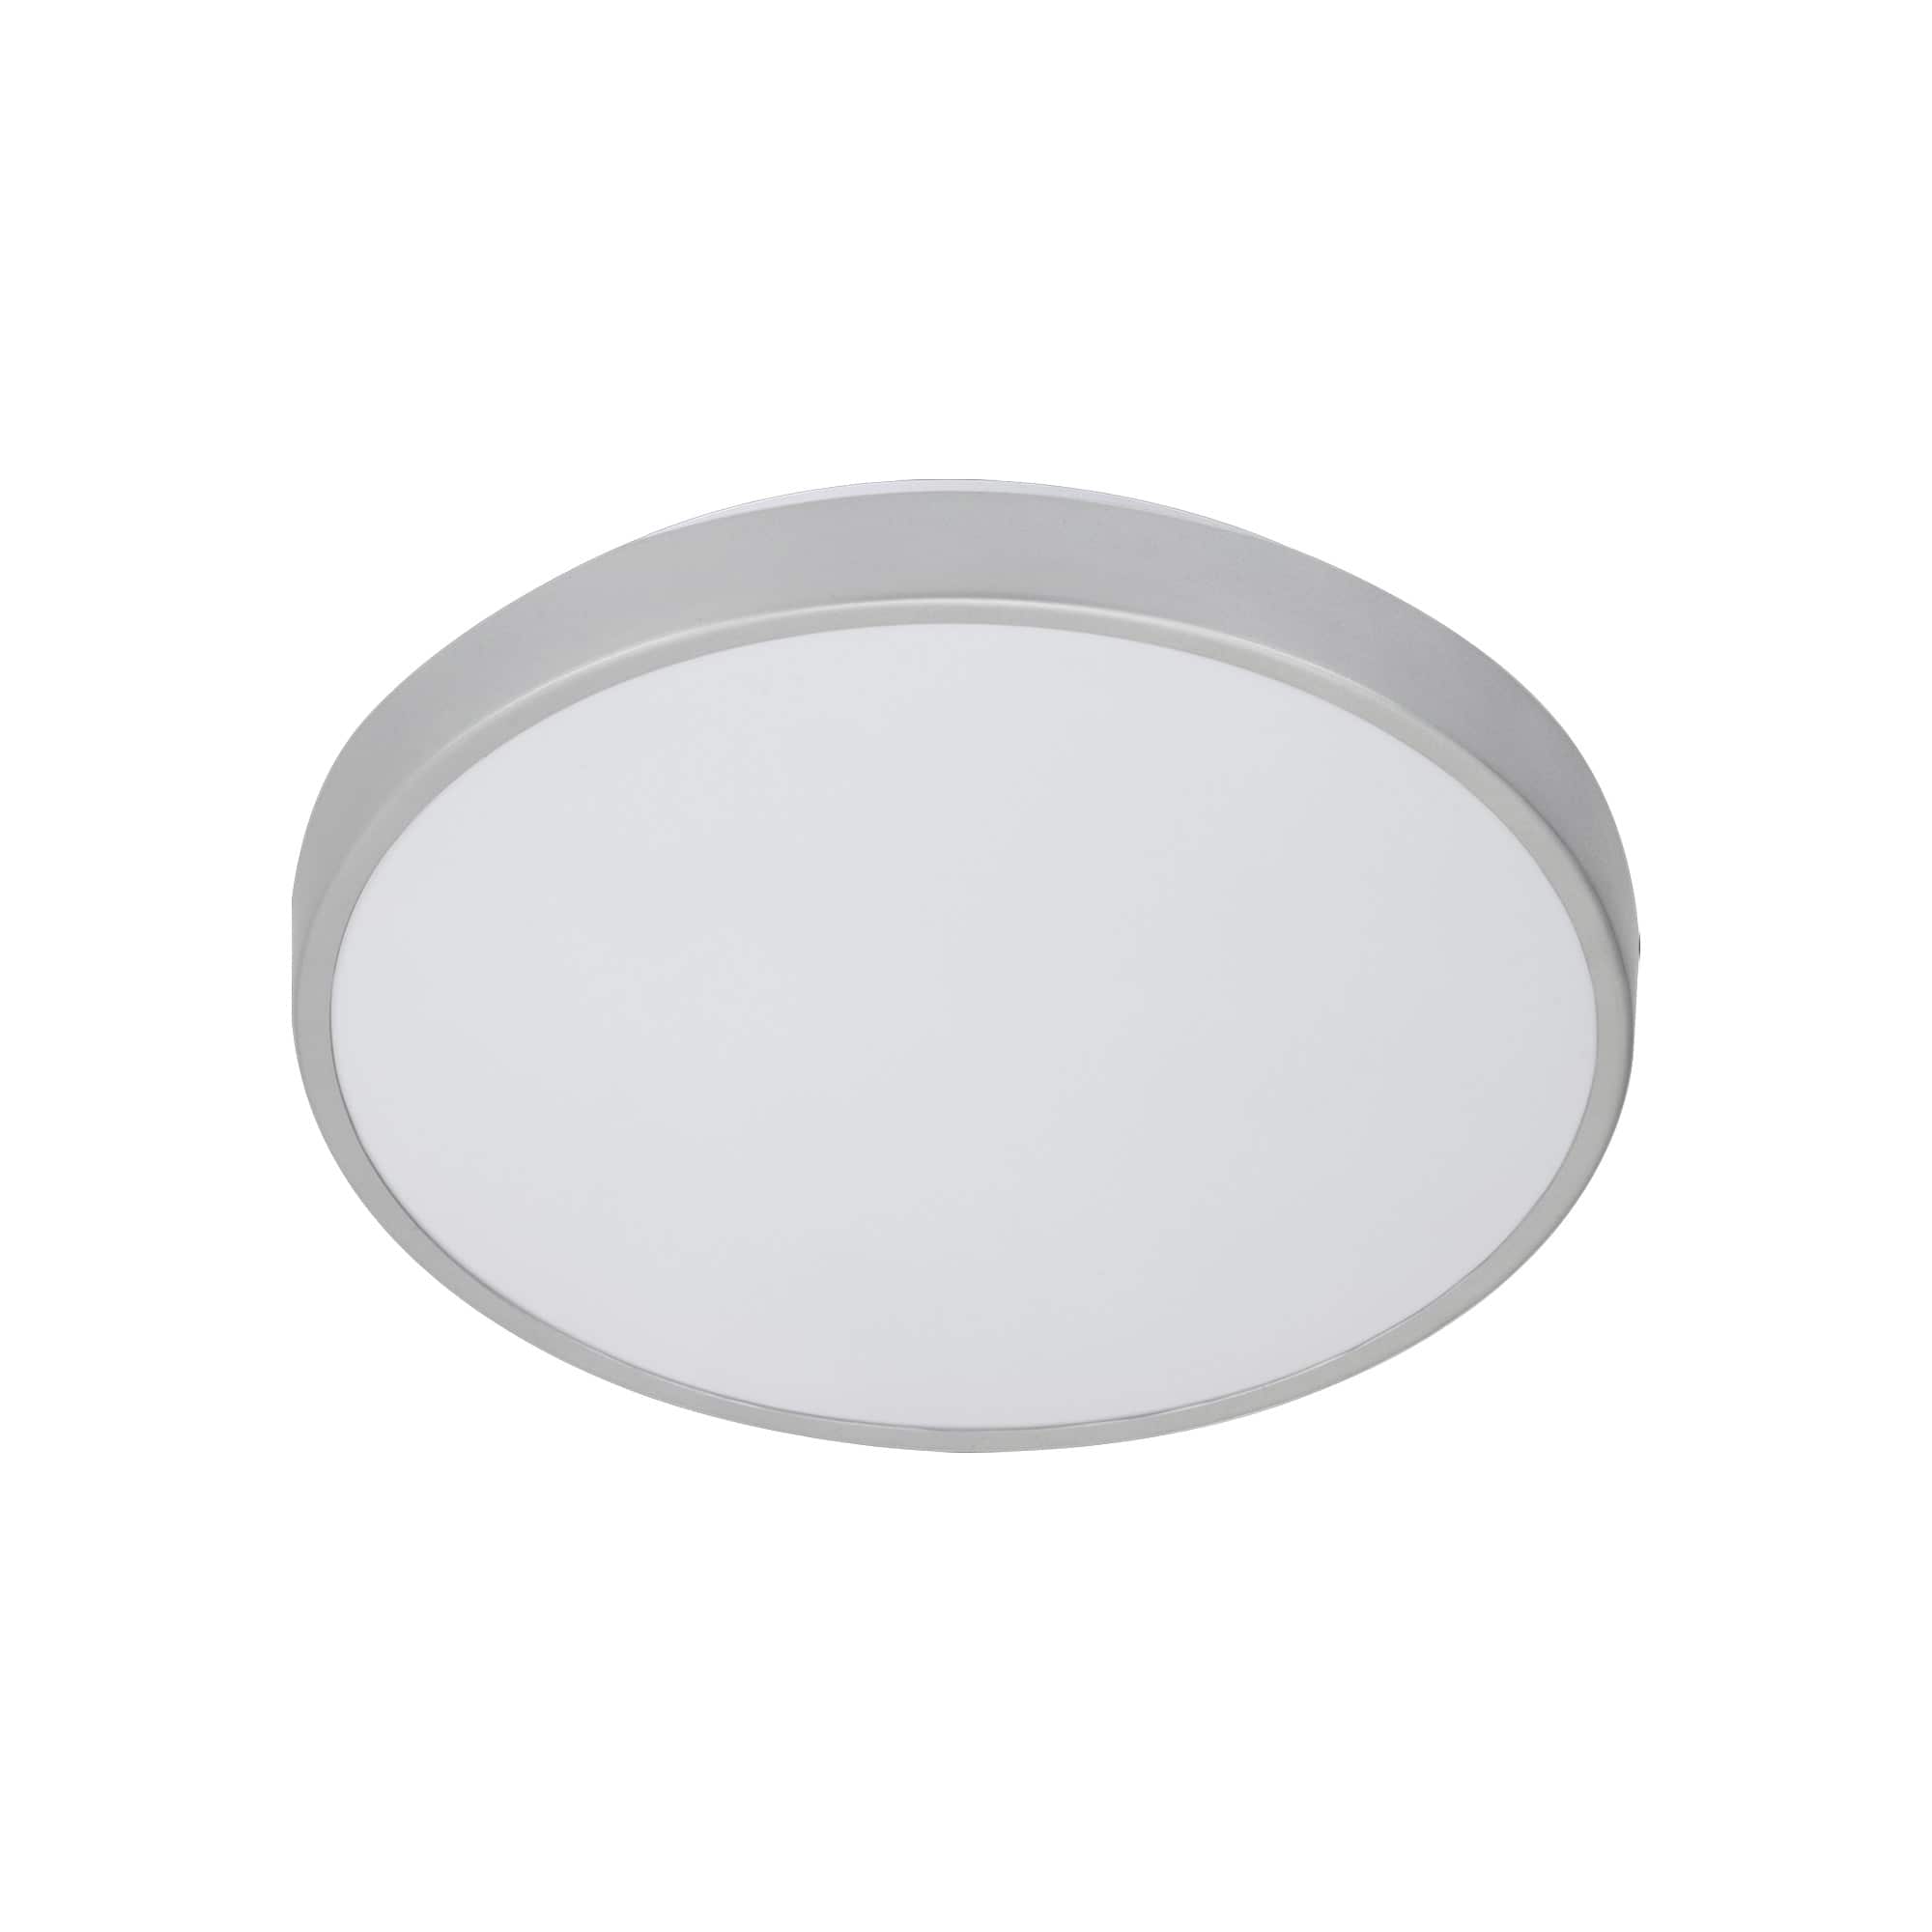 TELEFUNKEN Sensor LED Deckenleuchte, Ø 29 cm, 12 W, Weiß-Titan